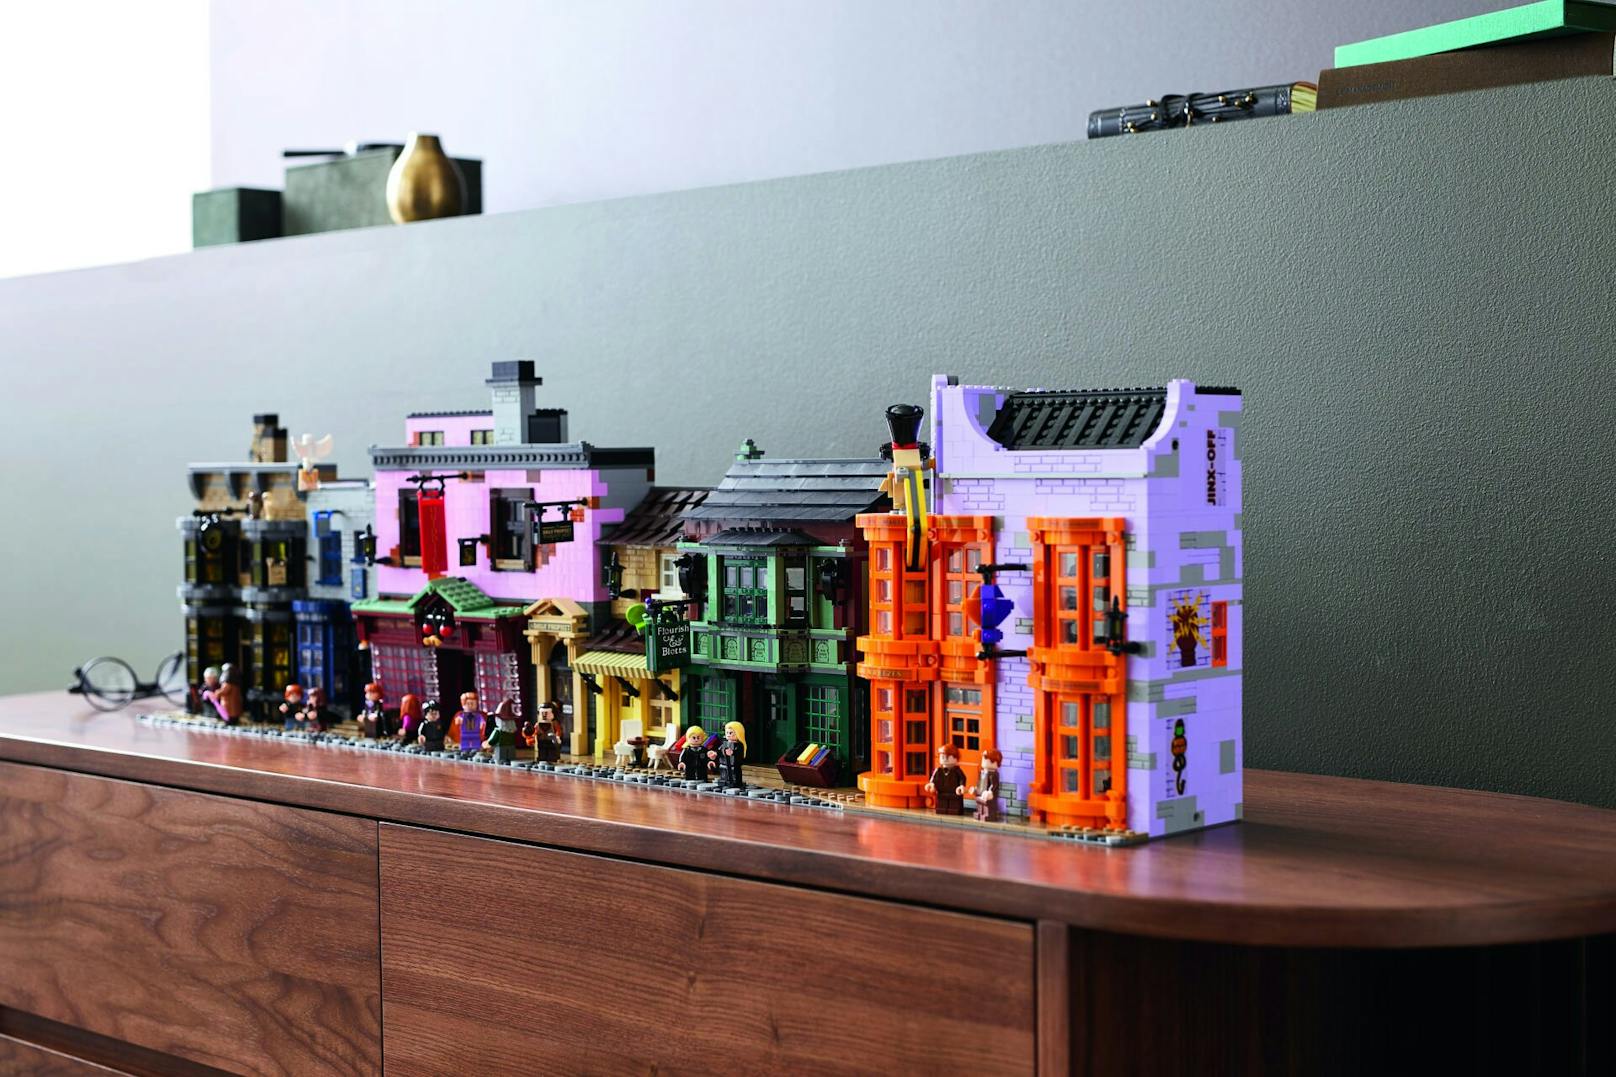 Jetzt können Lego-Fans sie zu Hause nachbauen und virtuell erleben.